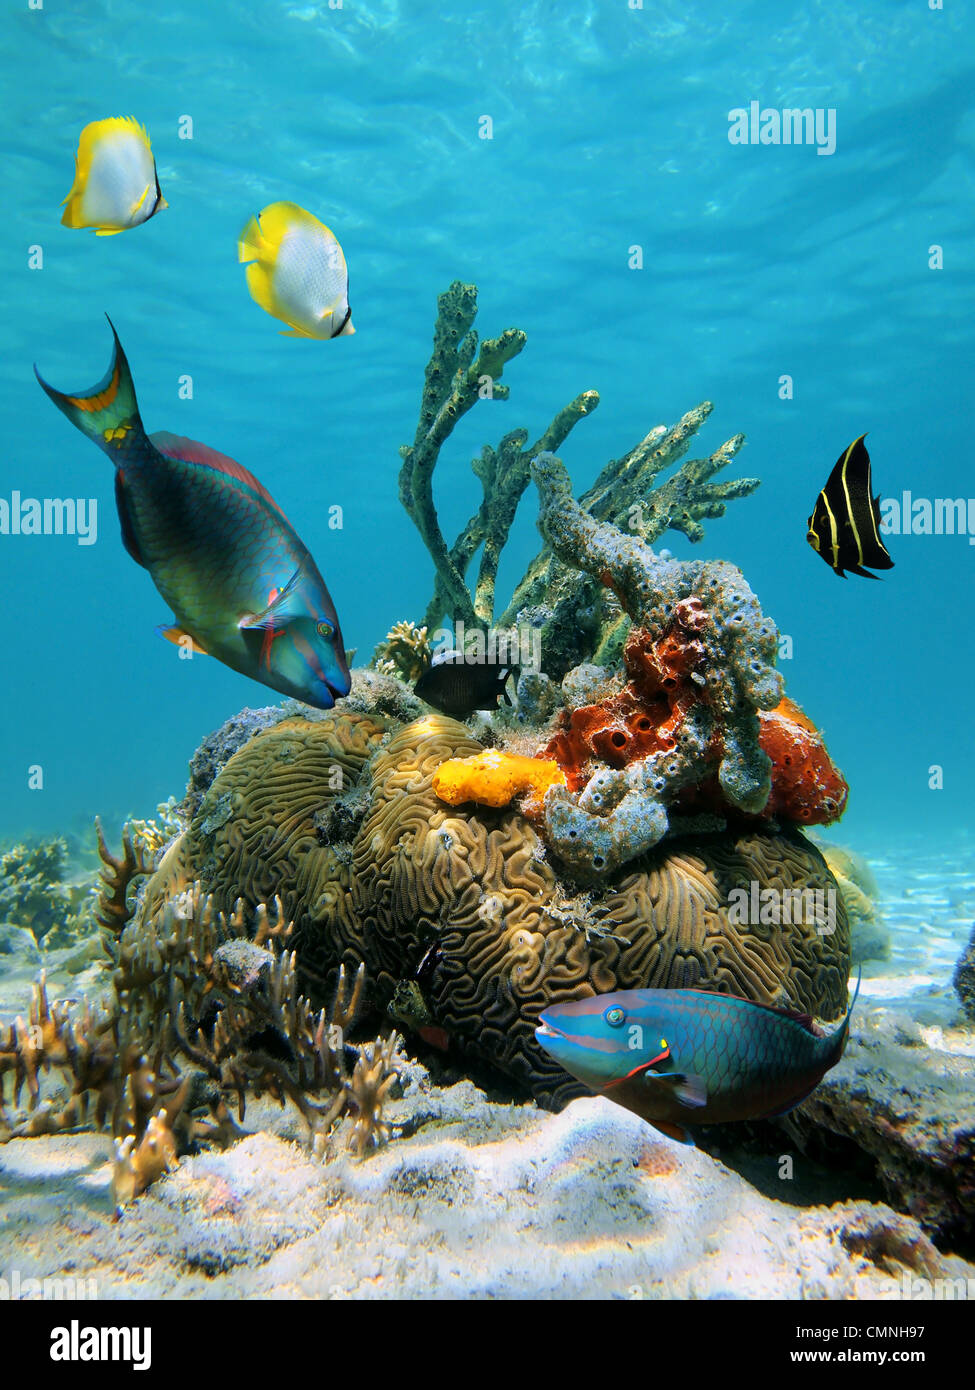 Peces de colores y vida marina tropical en el mar Caribe Foto de stock